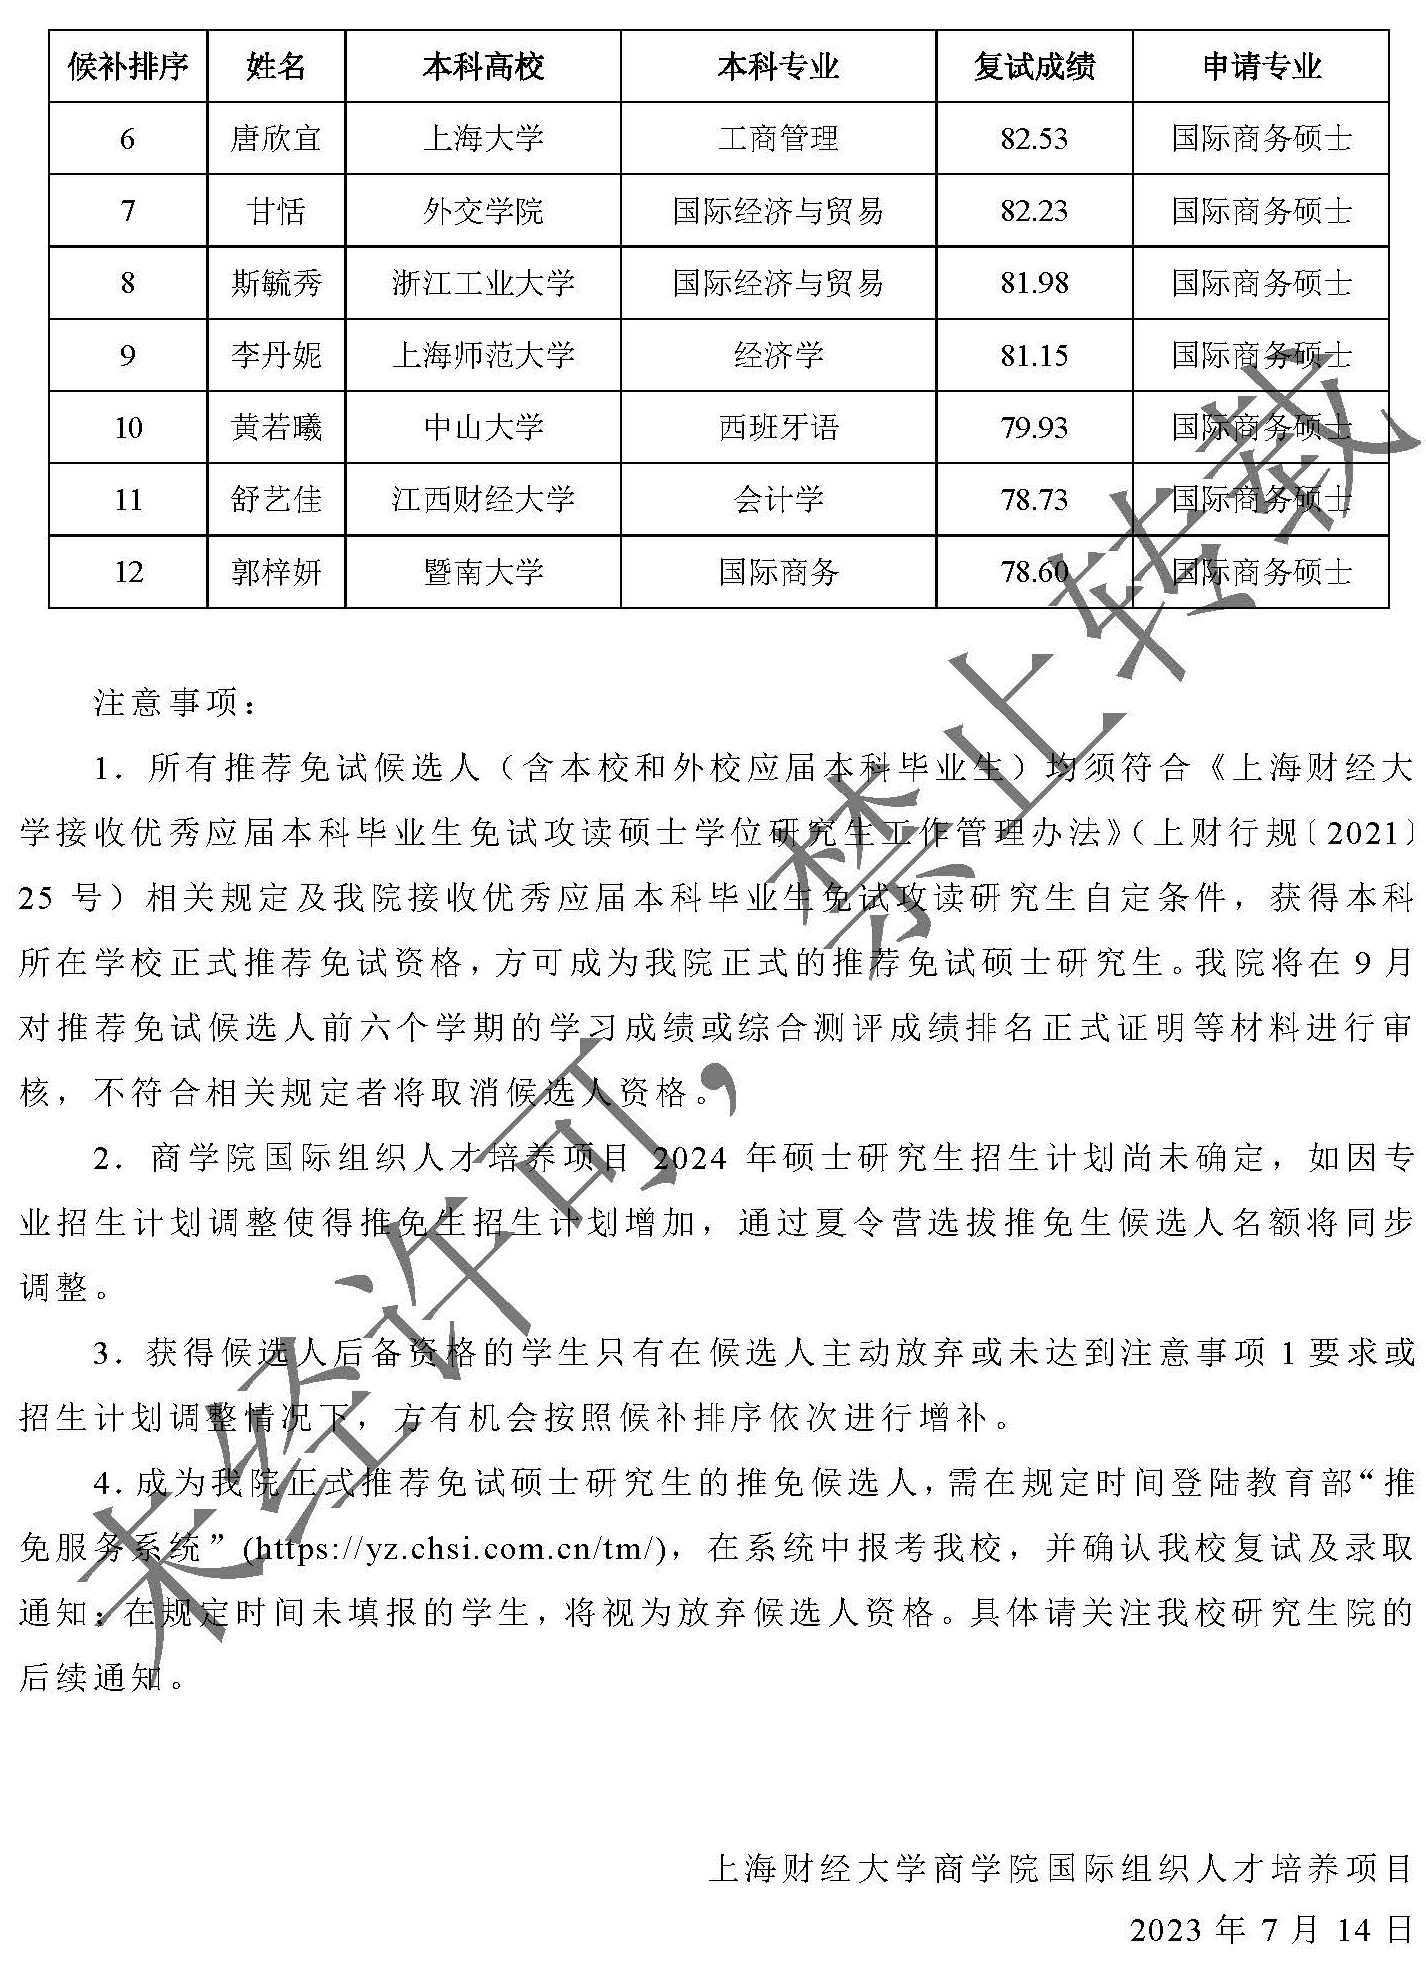 上海财经大学商学院国际组织人才培养项目2024年通过夏令营选拔外校推荐免试硕士研究生候选人名单（定）_页面_2.jpg